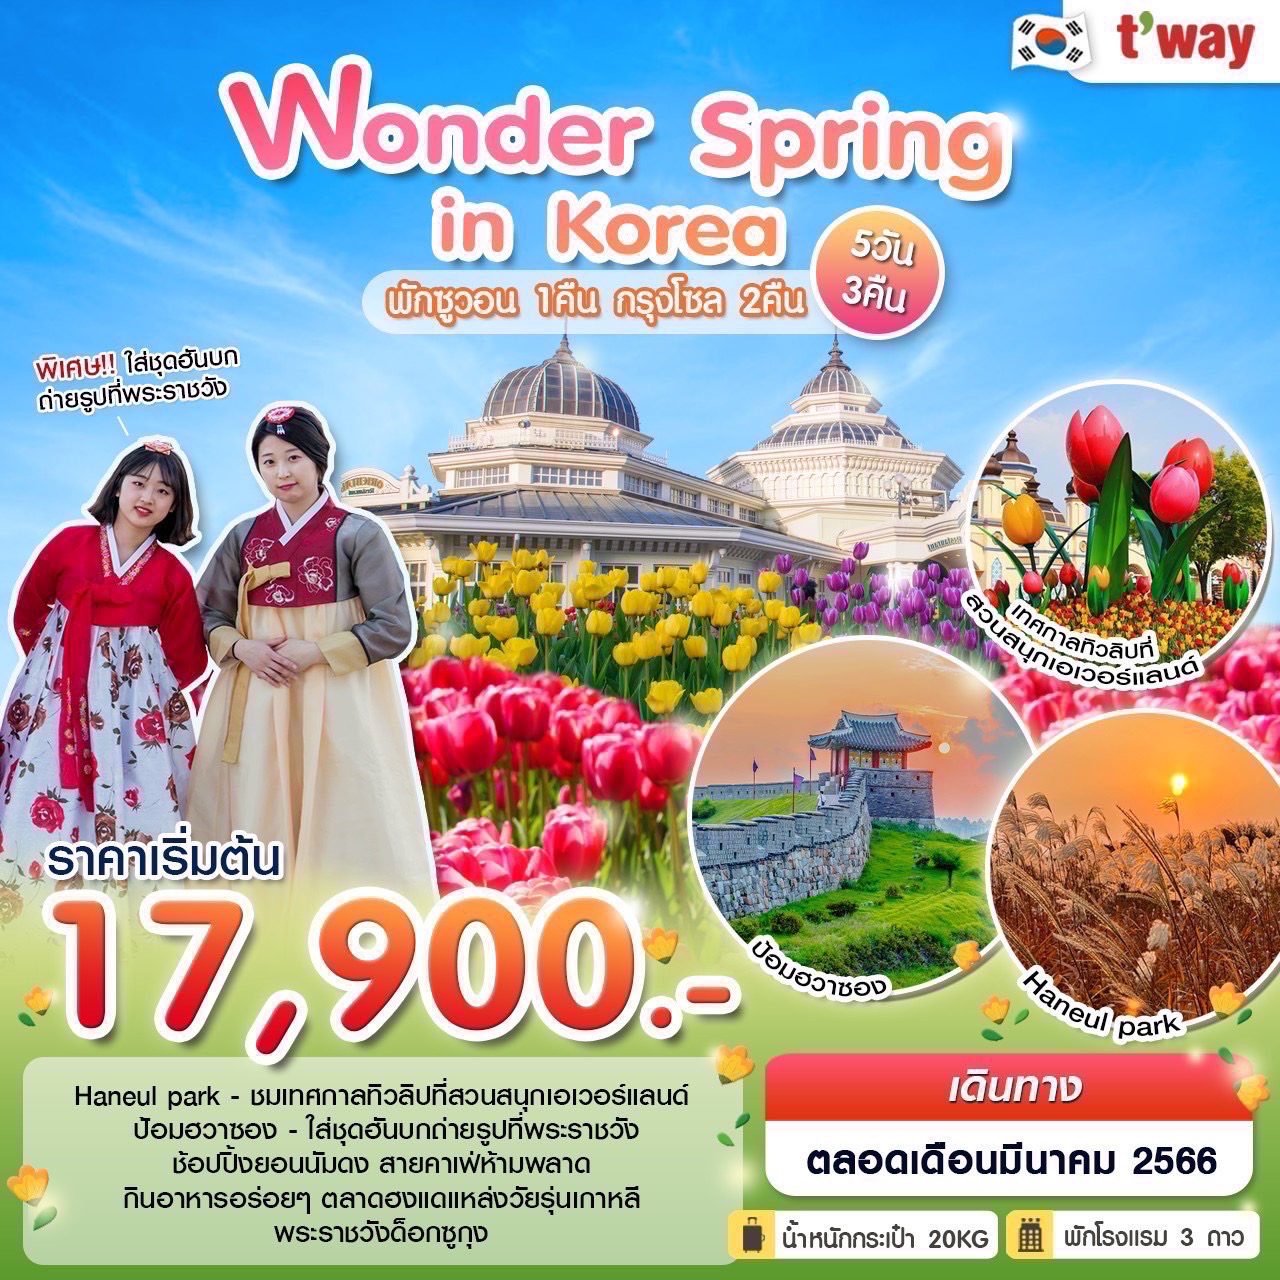 ทัวร์เกาหลีใต้ Wonder Spring in Korea 5 วัน 3 คืน  (TW) มี.ค. 66